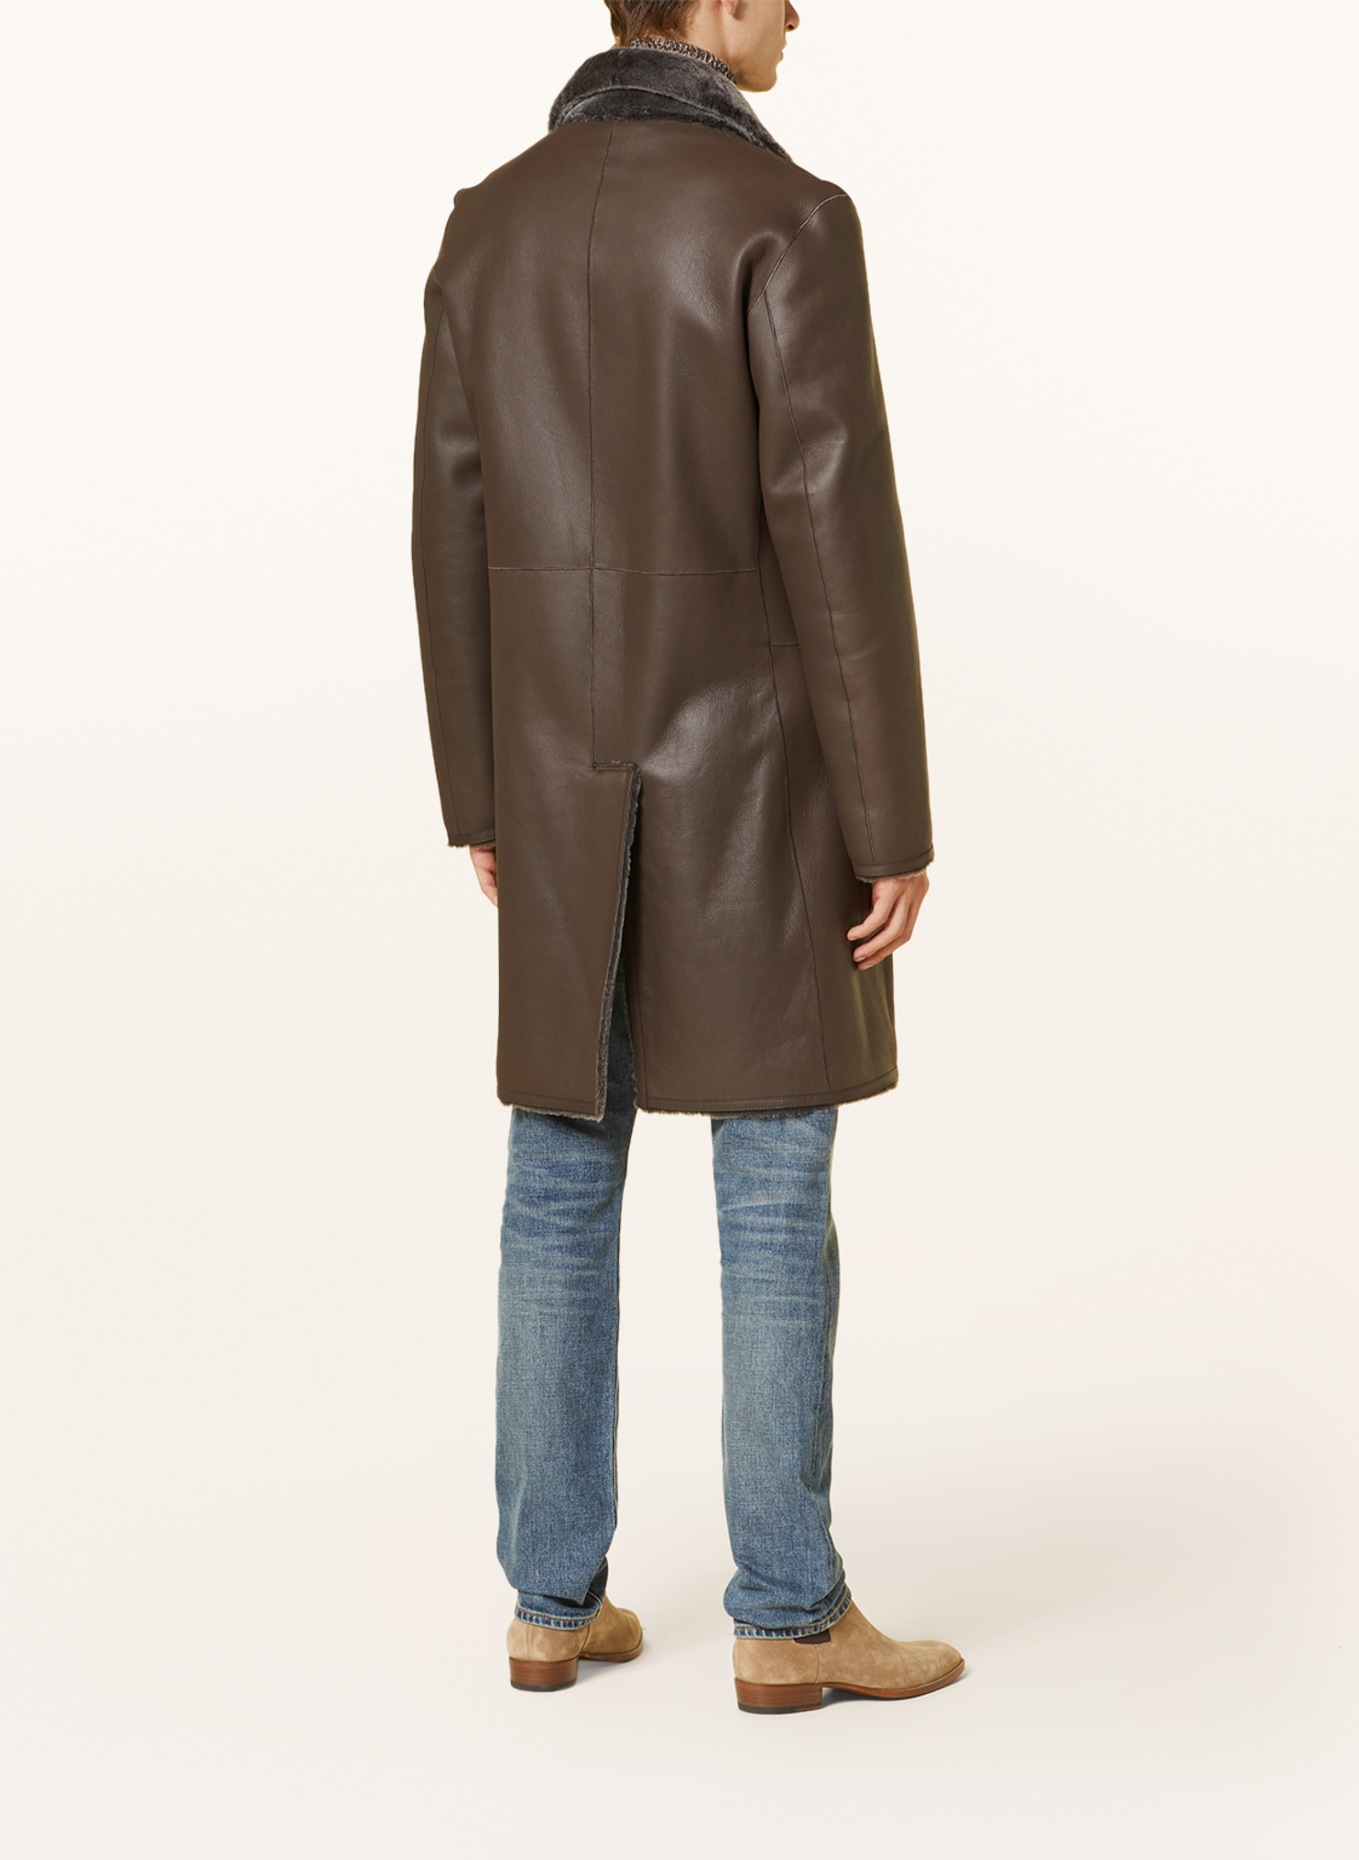 manzoni 24 Reversible leather coat, Color: DARK BROWN (Image 4)